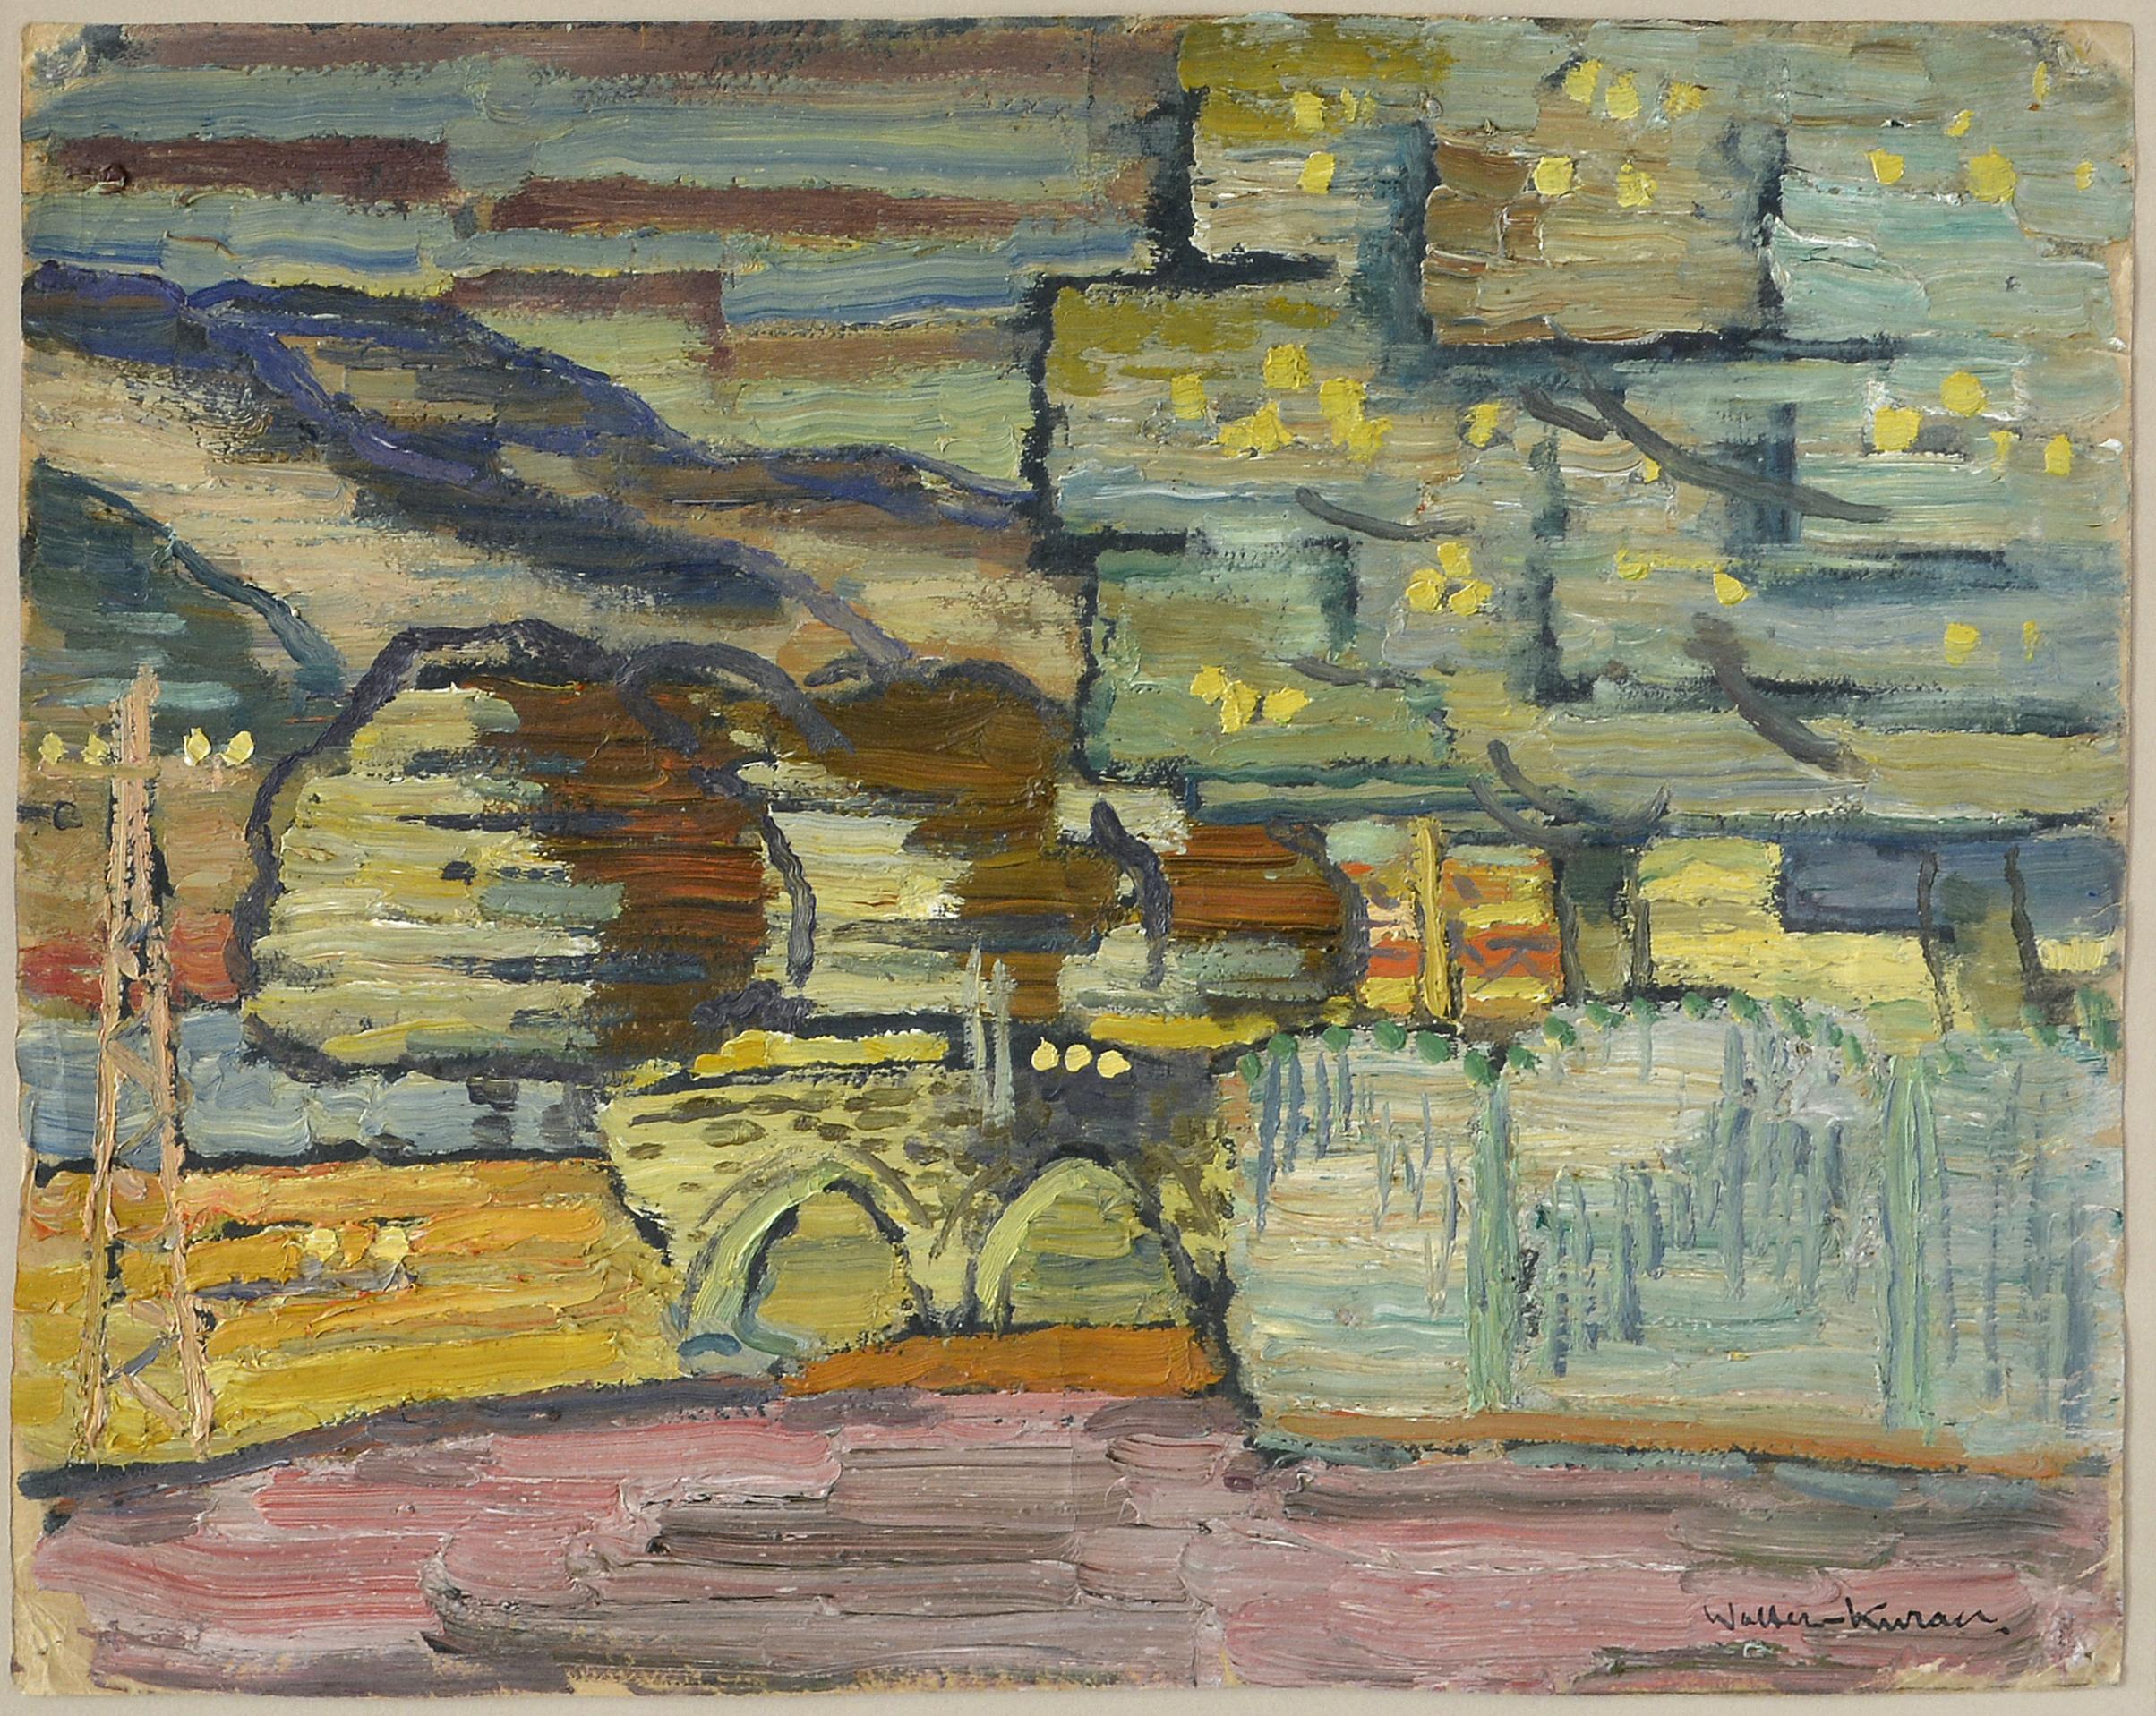 Arlberg brücke. 1930, оil on cardboard, 30x36,5 cm